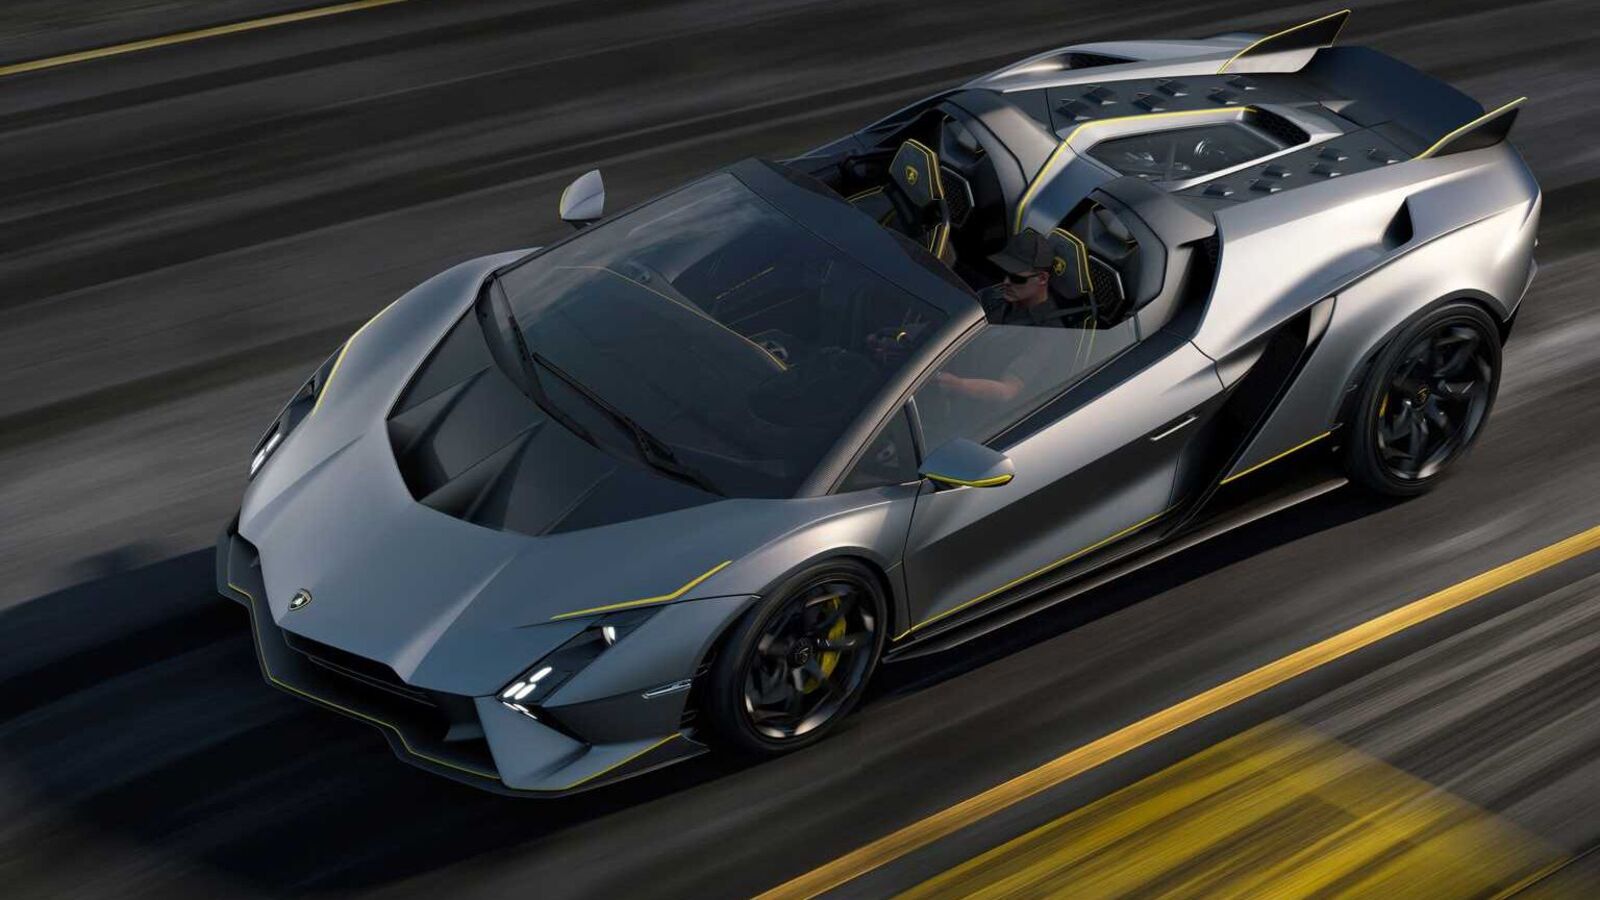 In pics: Lamborghini Autentica is a drop-top V12 monster | HT Auto